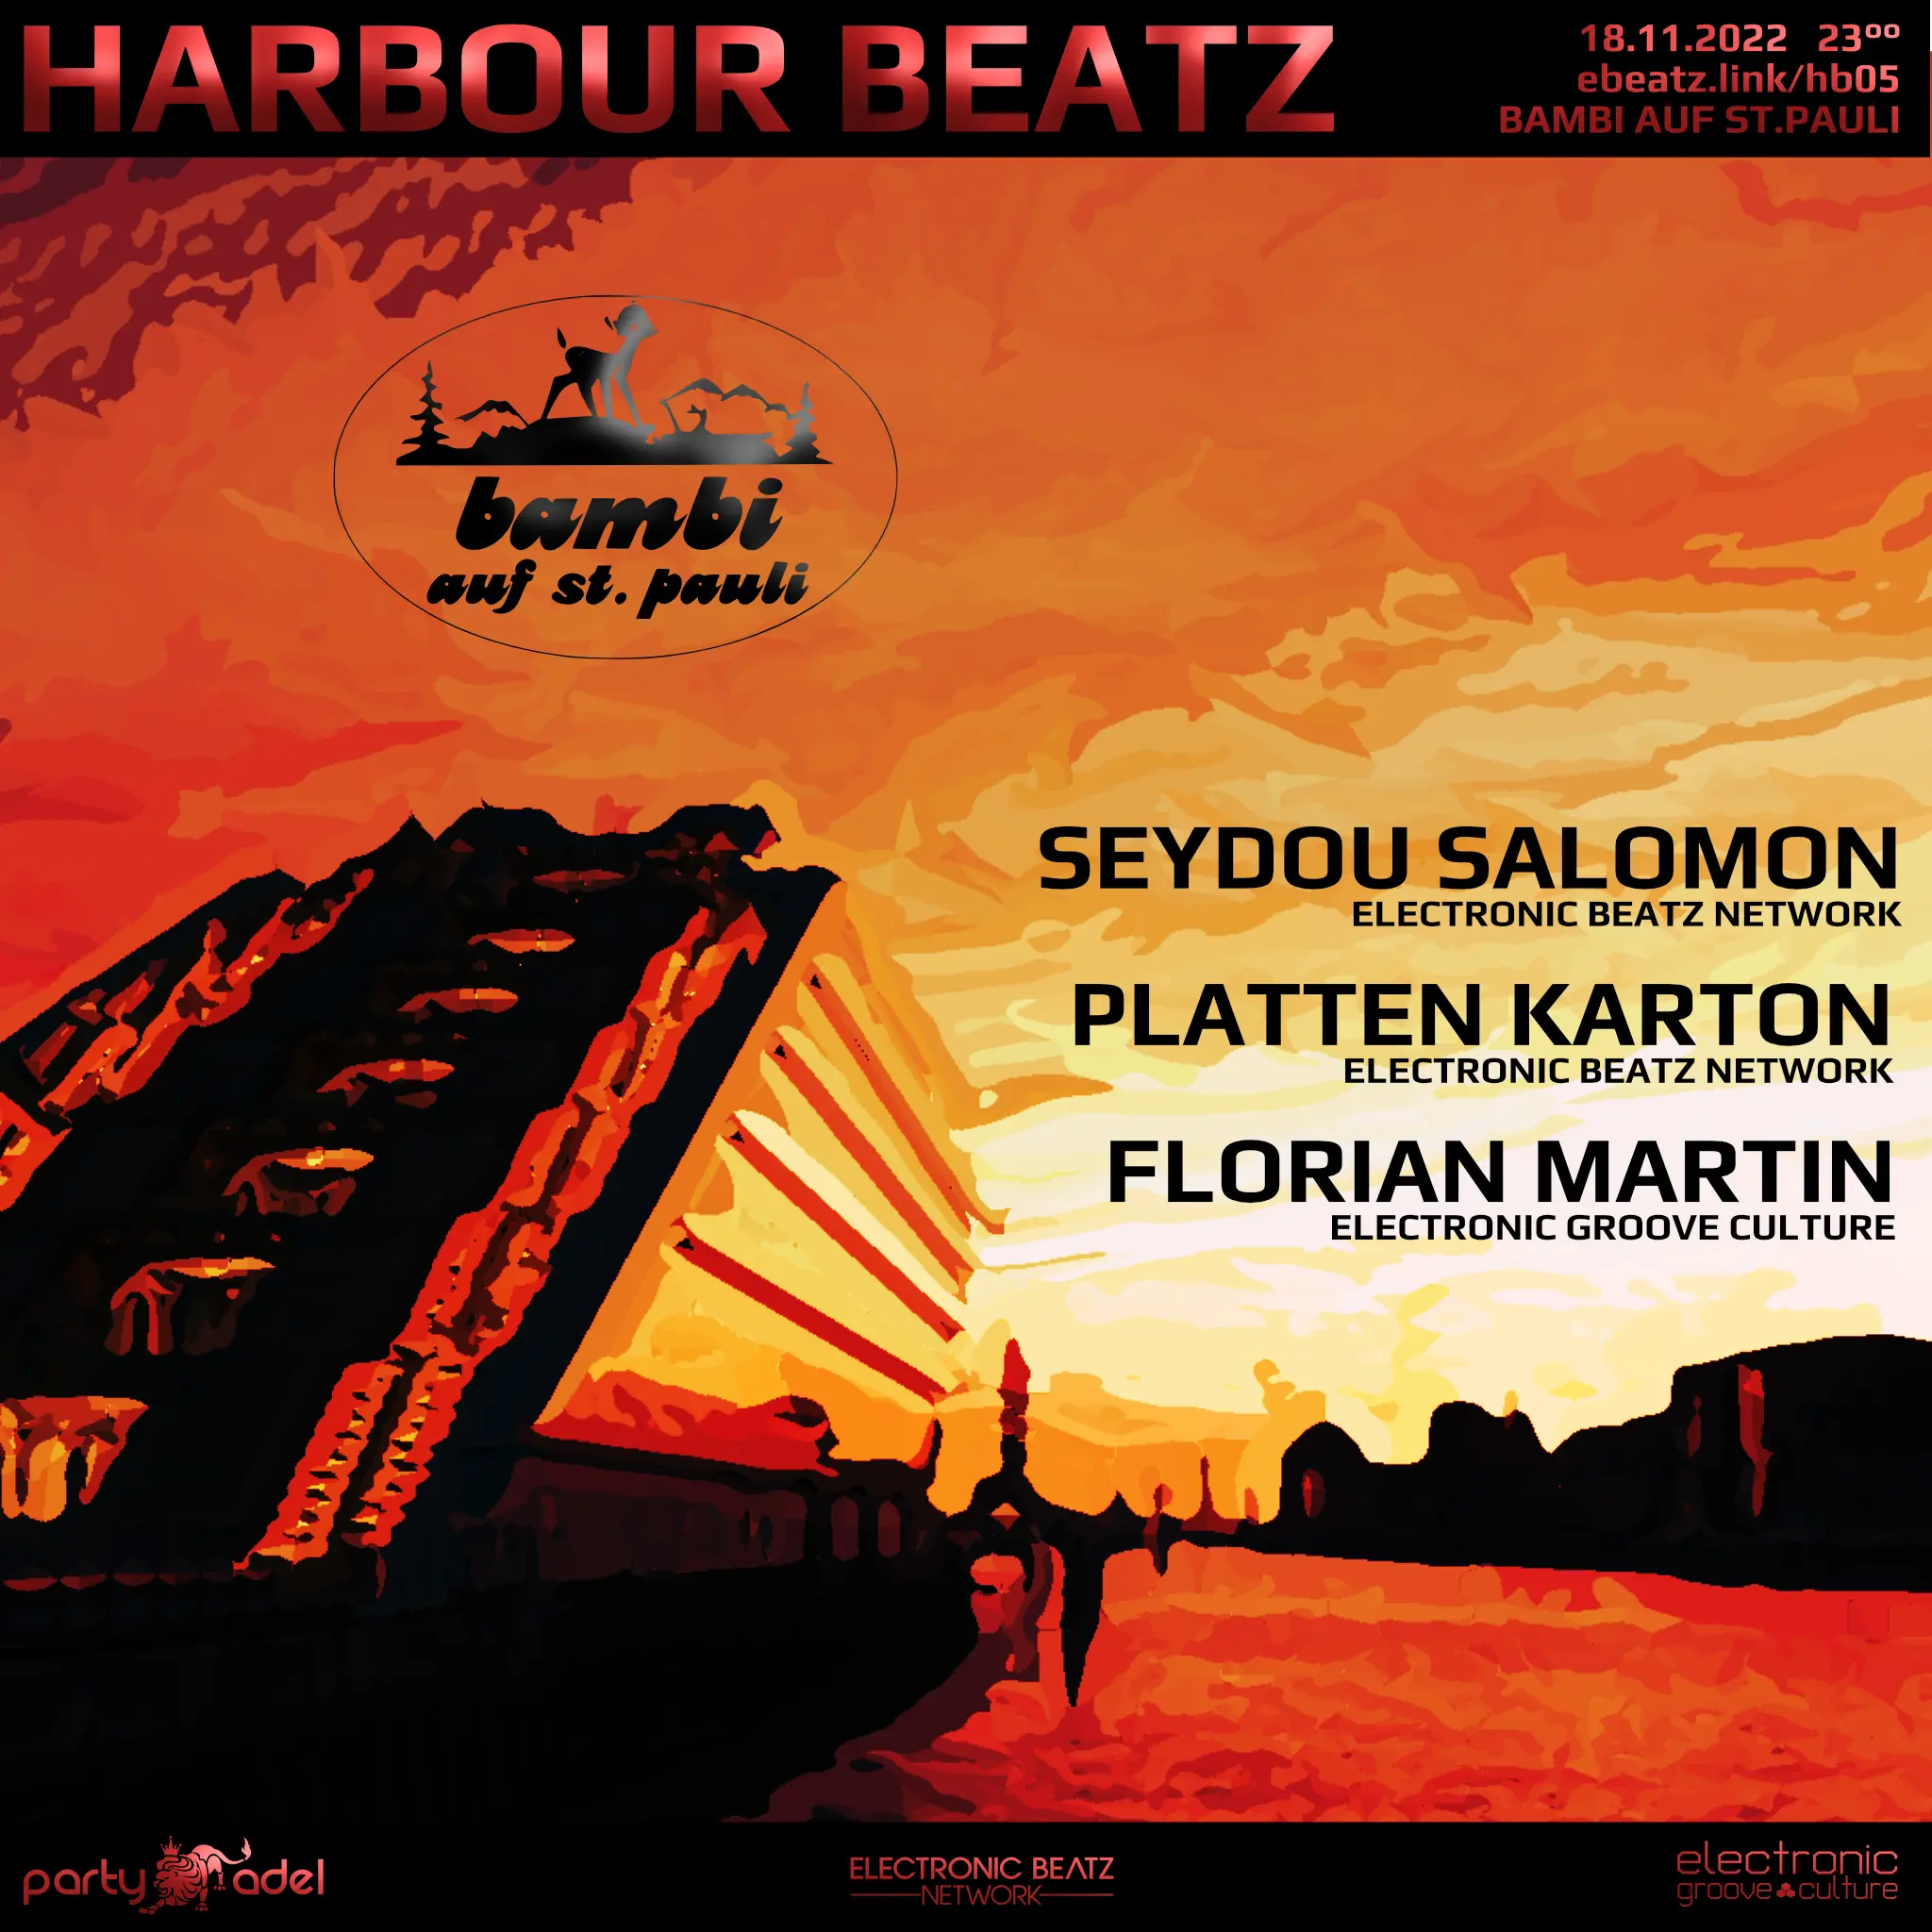 Harbour Beatz (18.11.2022)